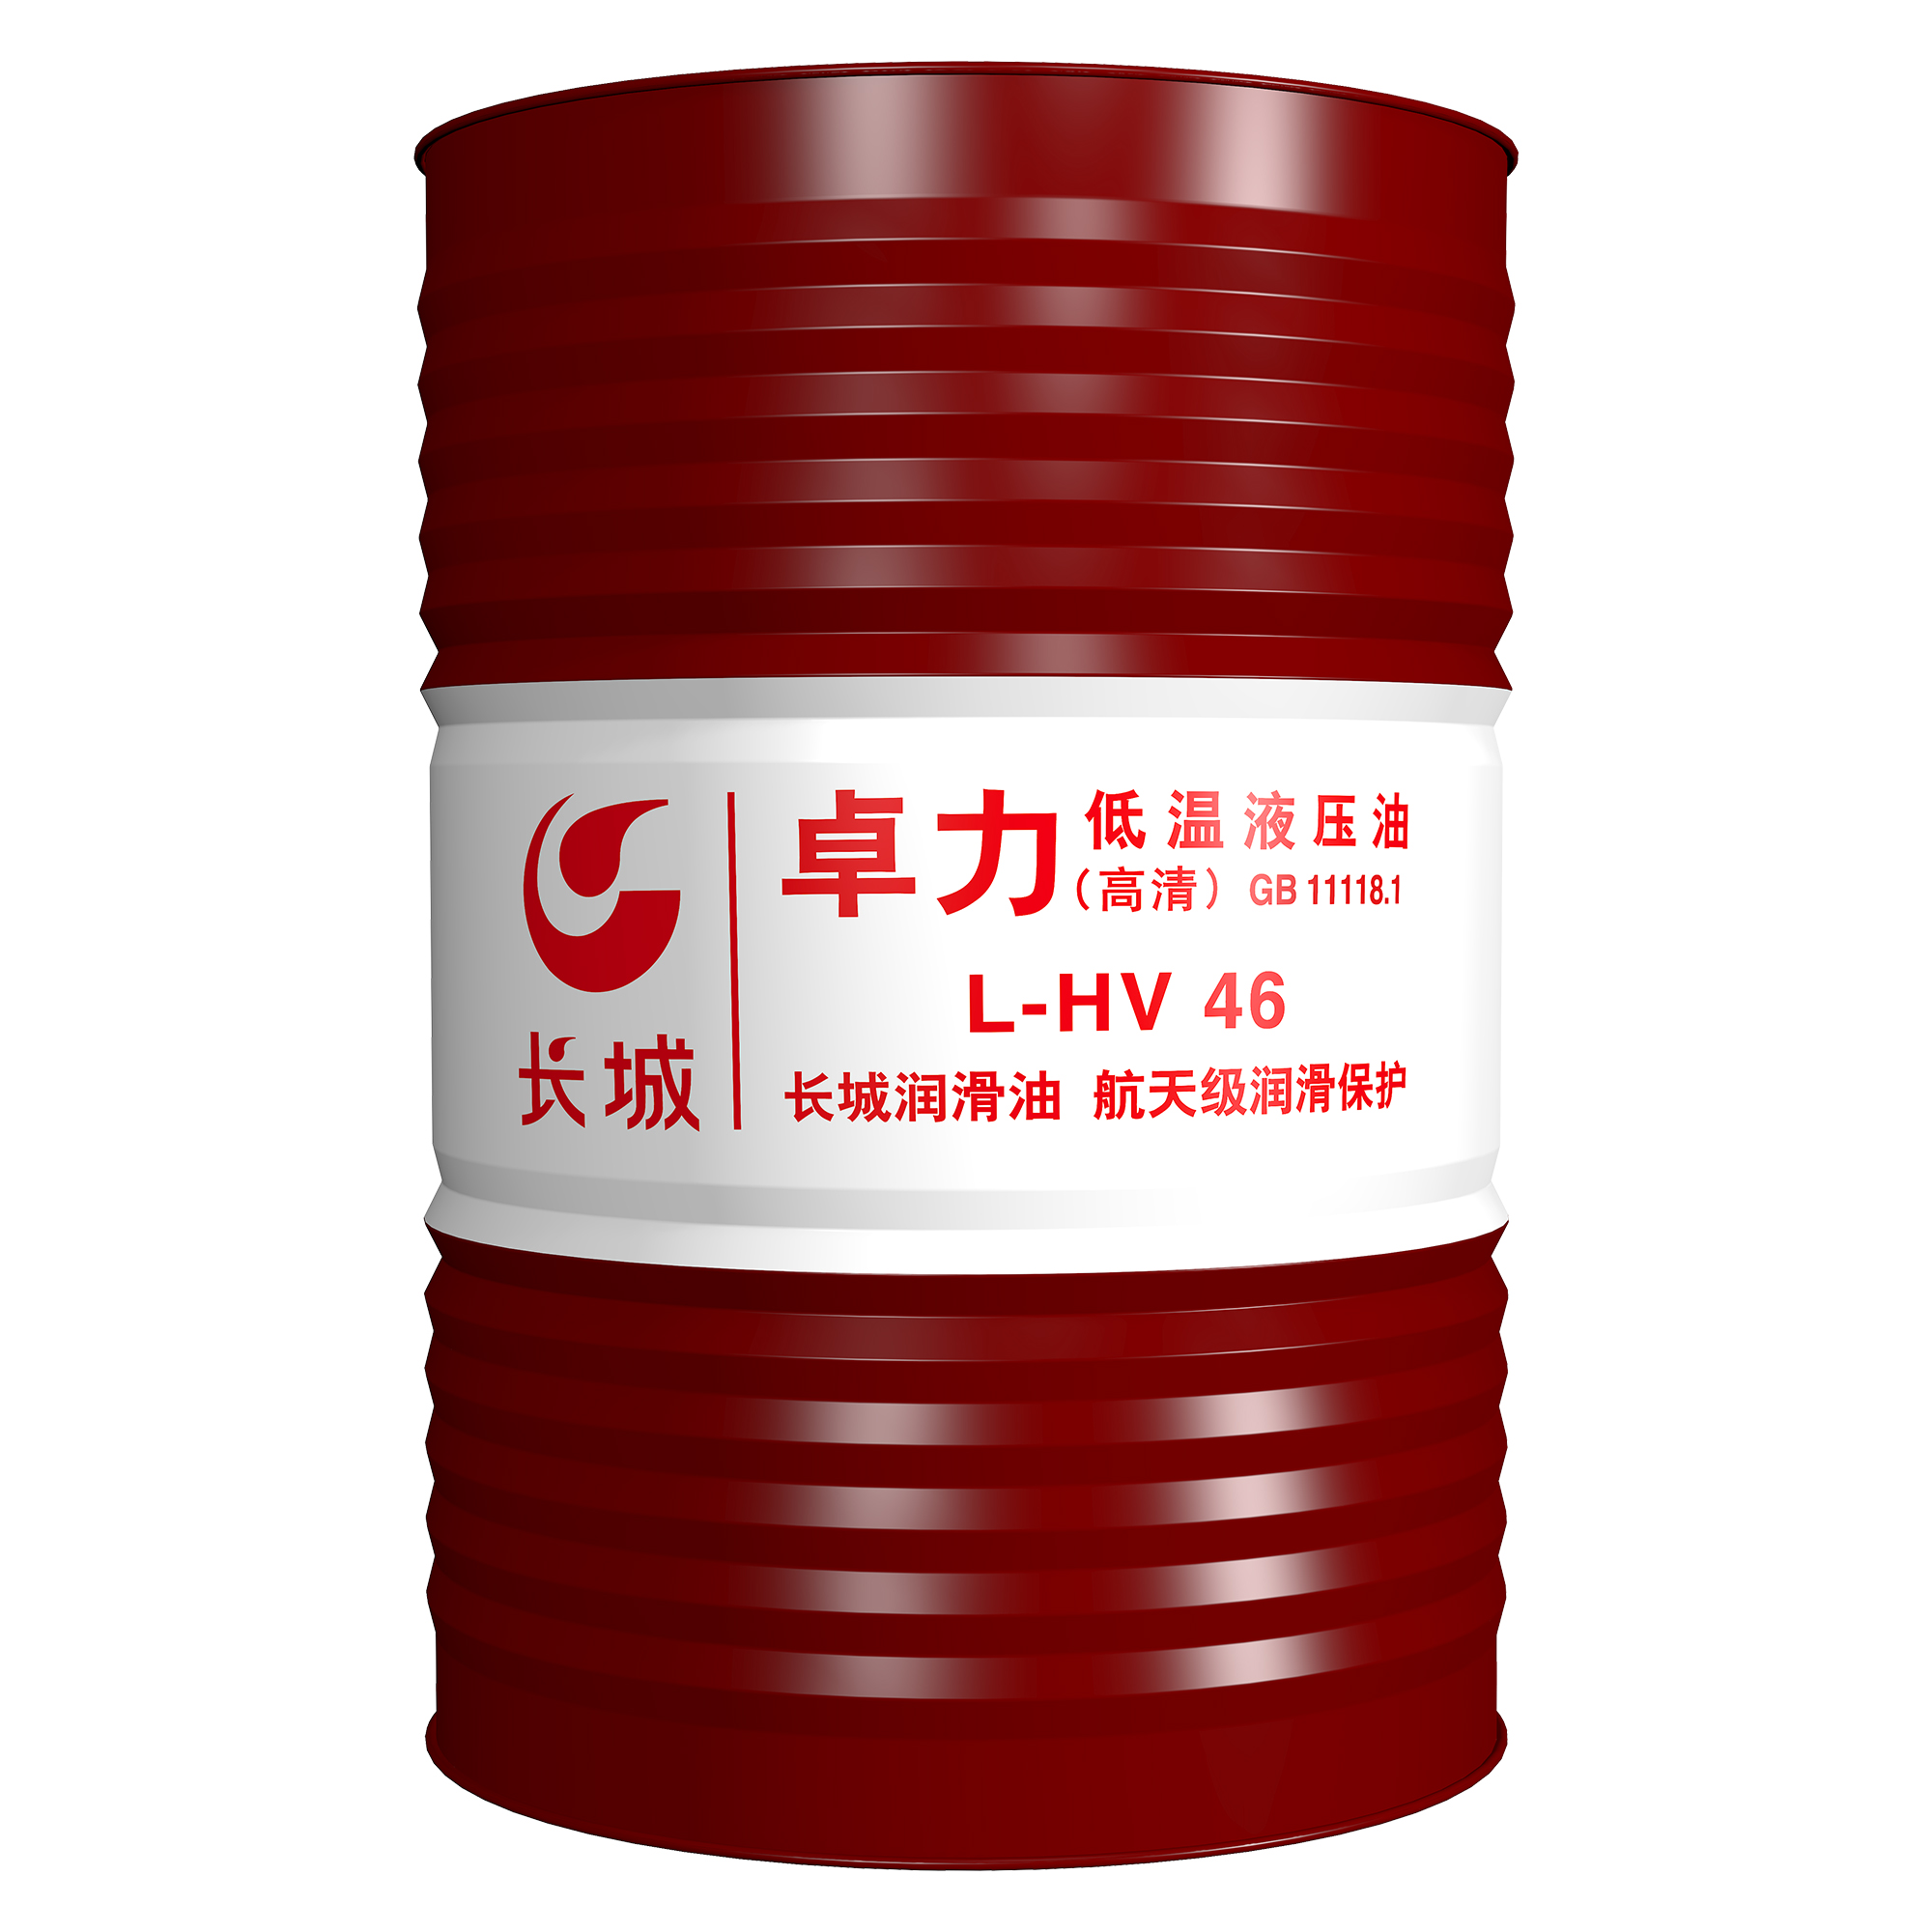 倍力石化 供应长城卓力L-HV46低温液压油 中国石化 荣誉出品